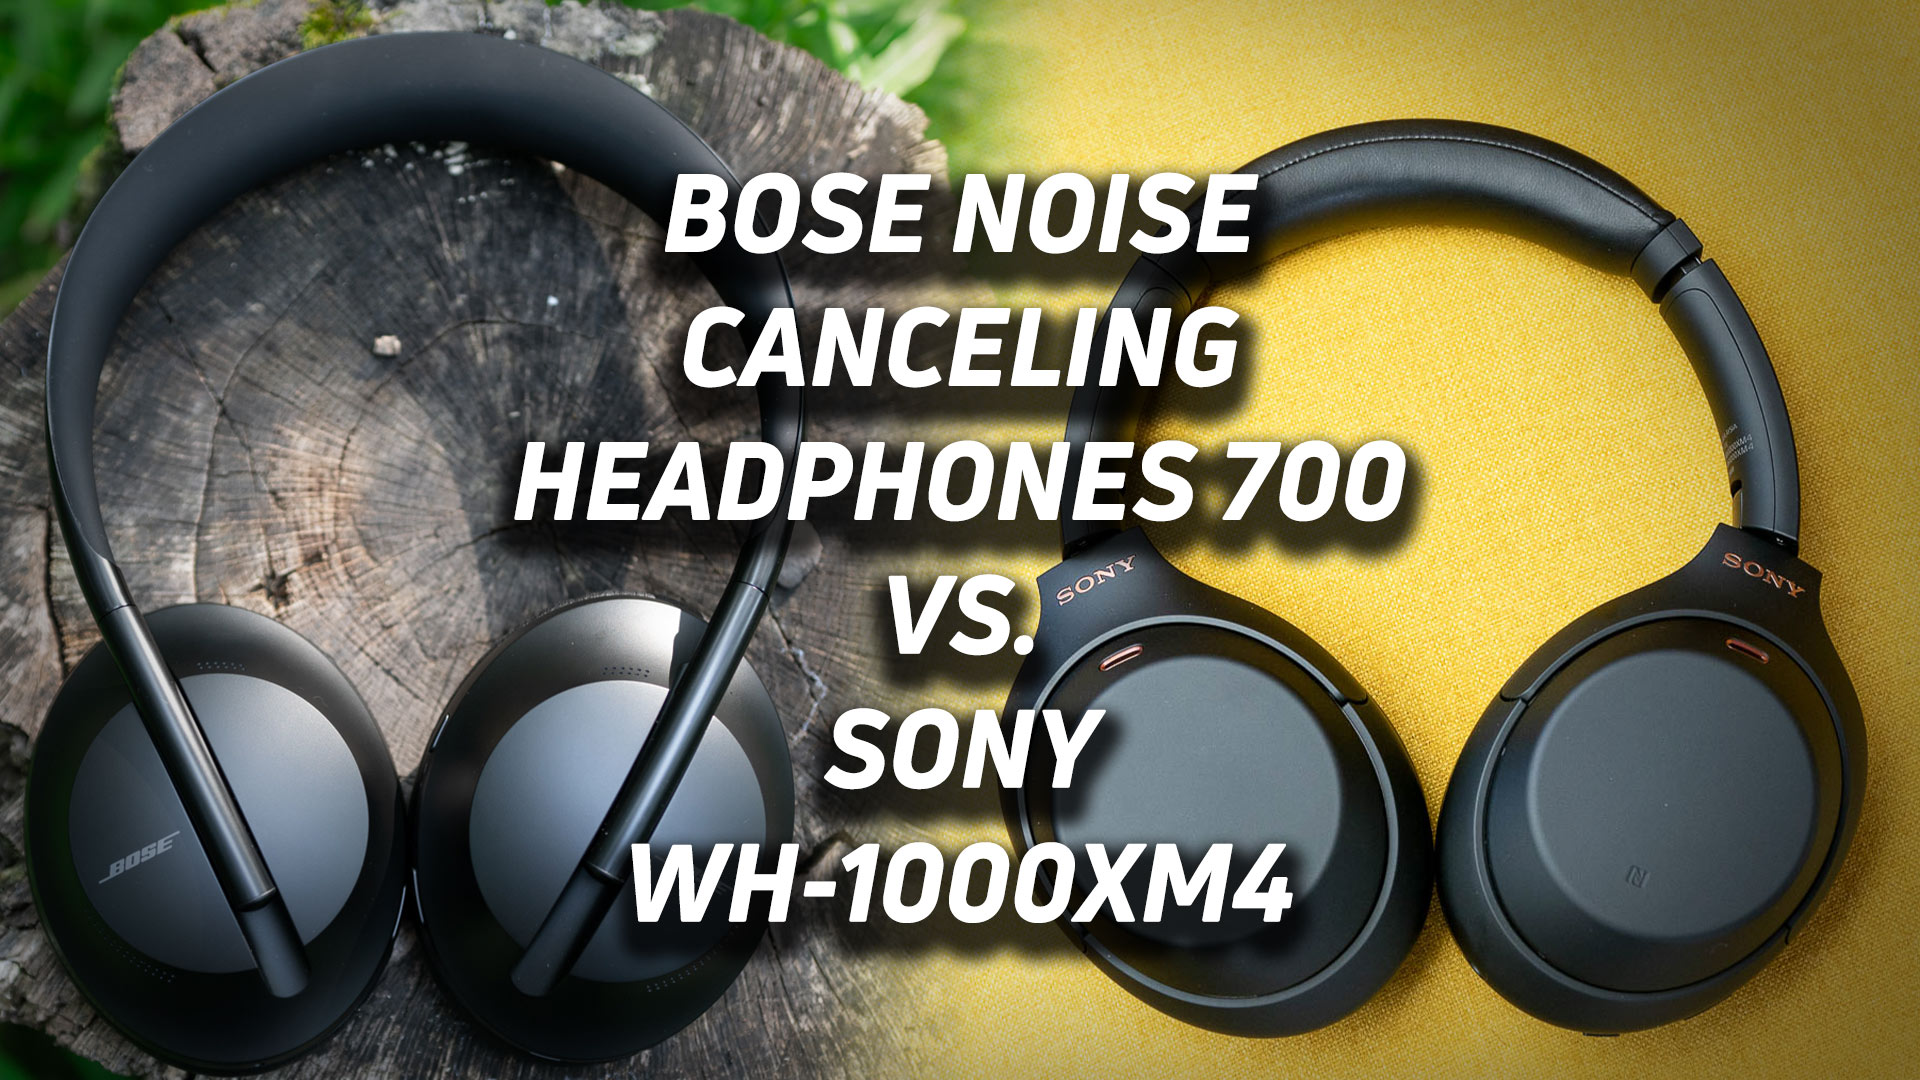 Bose Noise Cancelling Headphones 700 vs WH-1000XM4 - SoundGuys